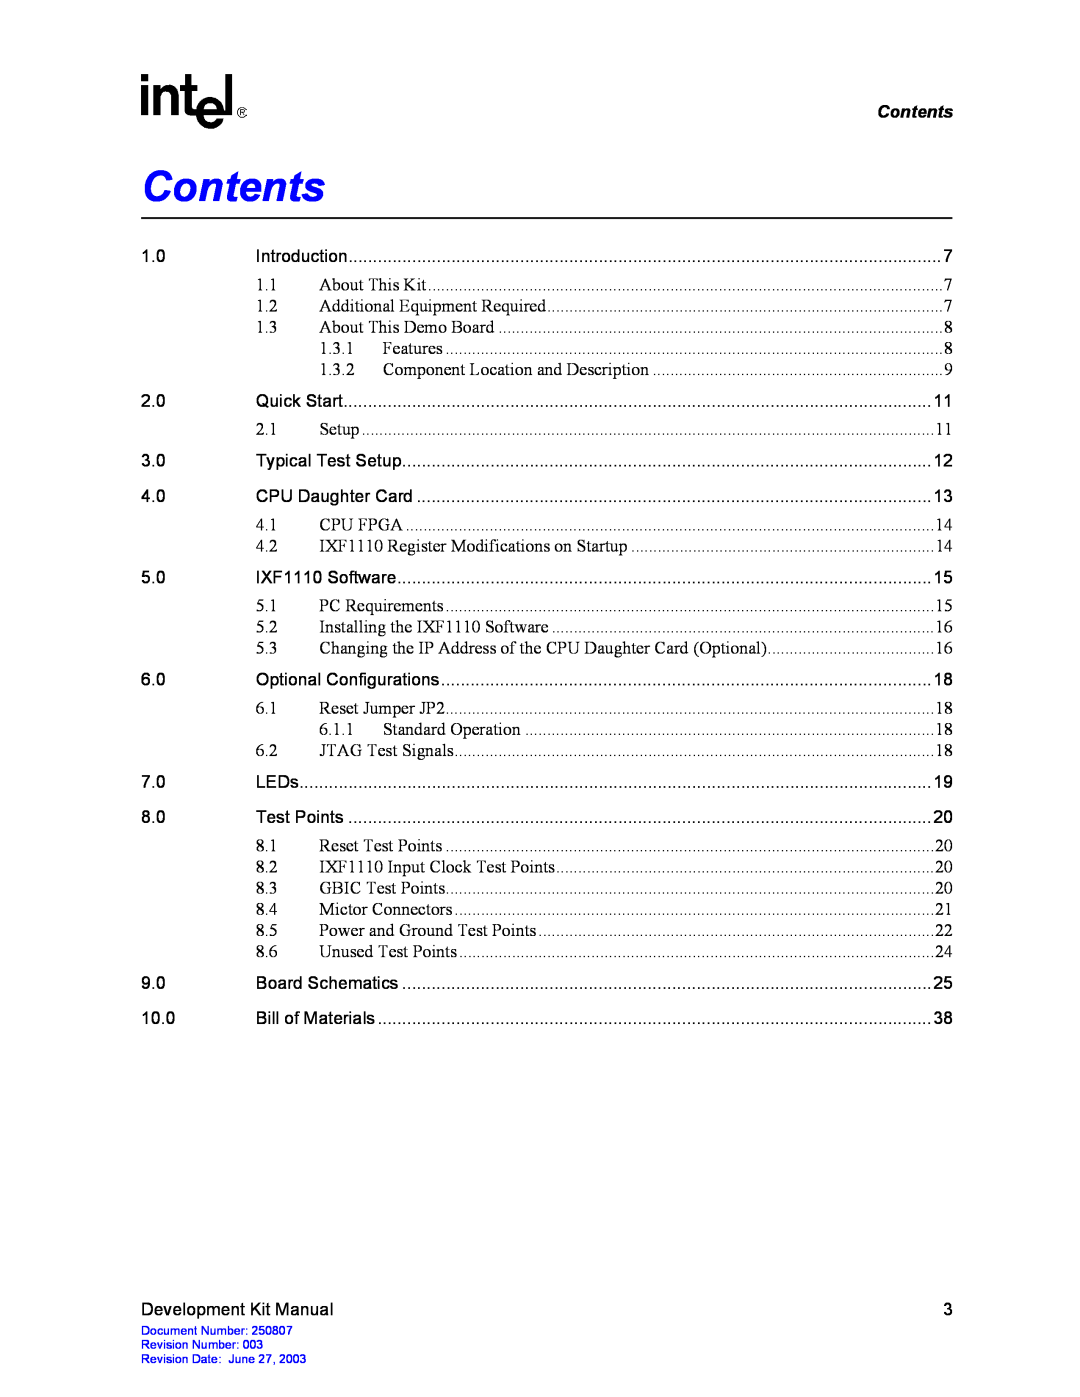 Intel IXD1110 manual Contents 